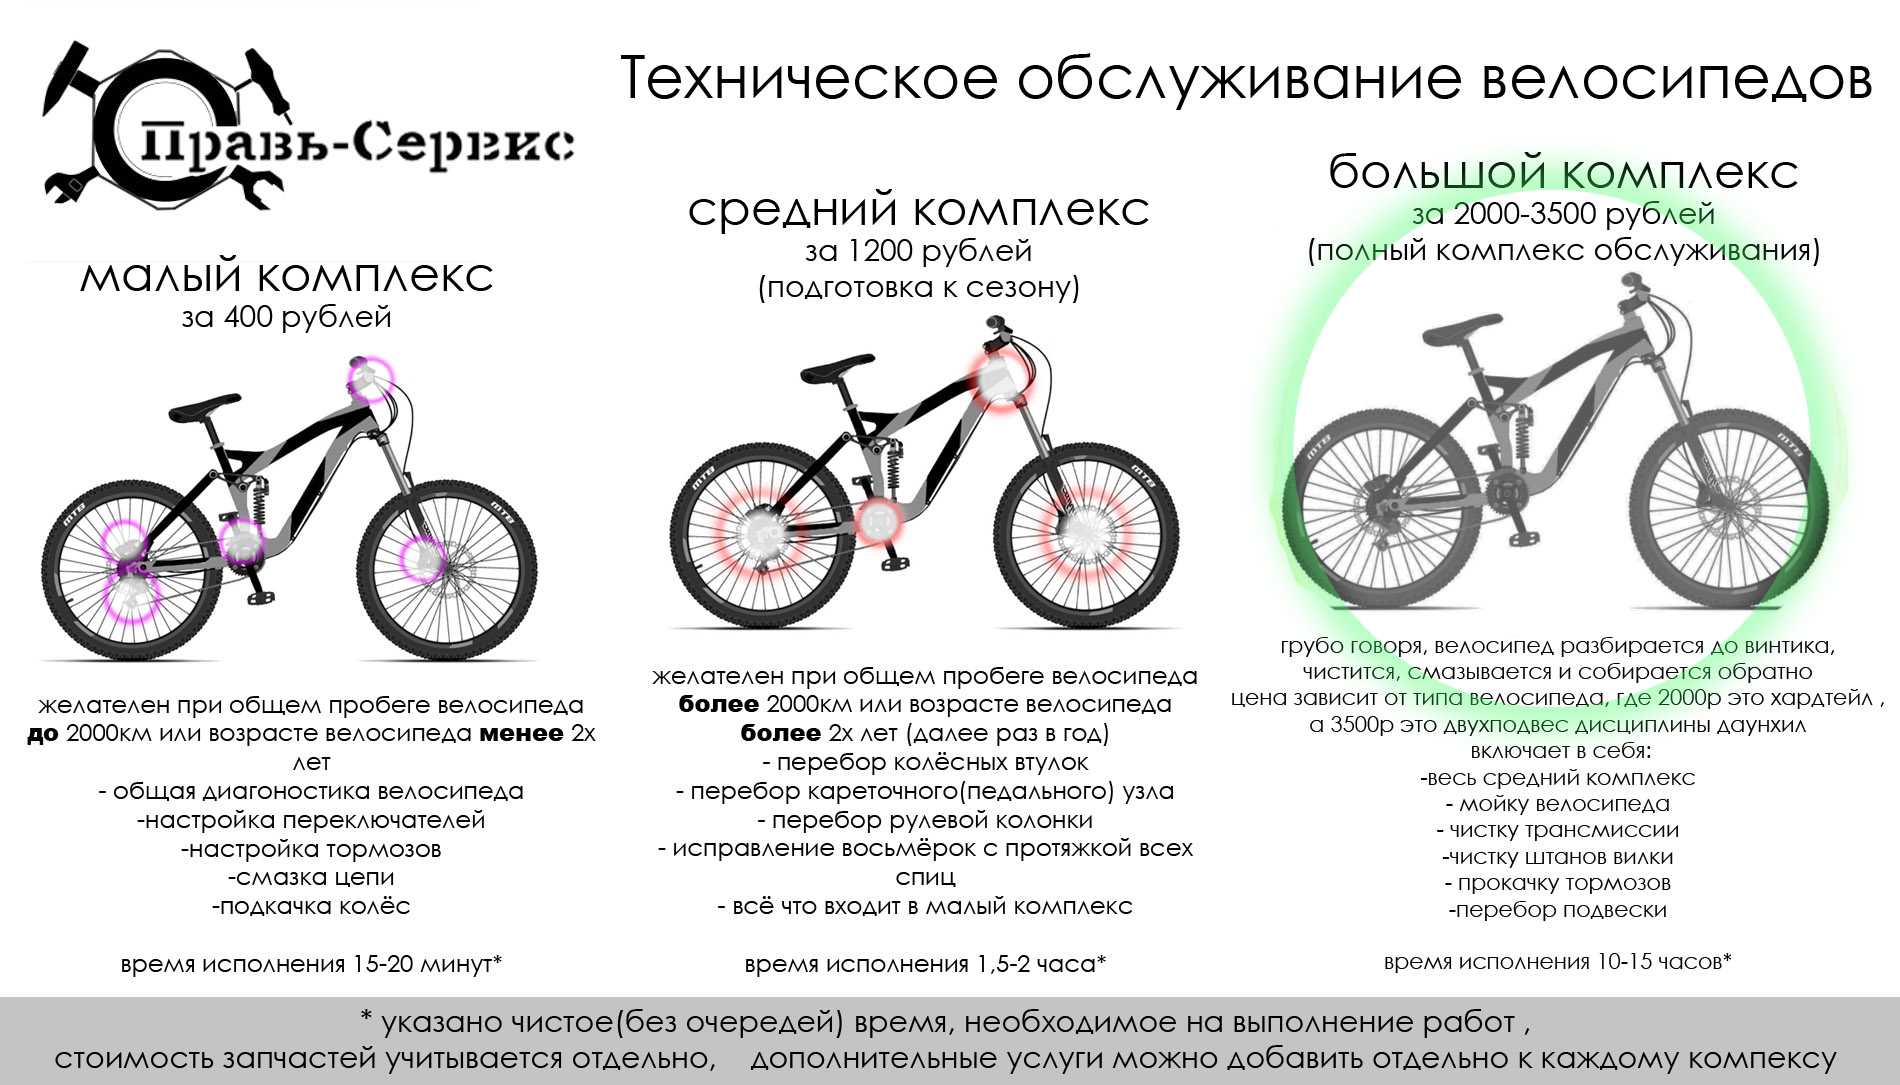 Author: обзор модельного ряда велосипедов (характеристики, фото, плюсы и минусы)